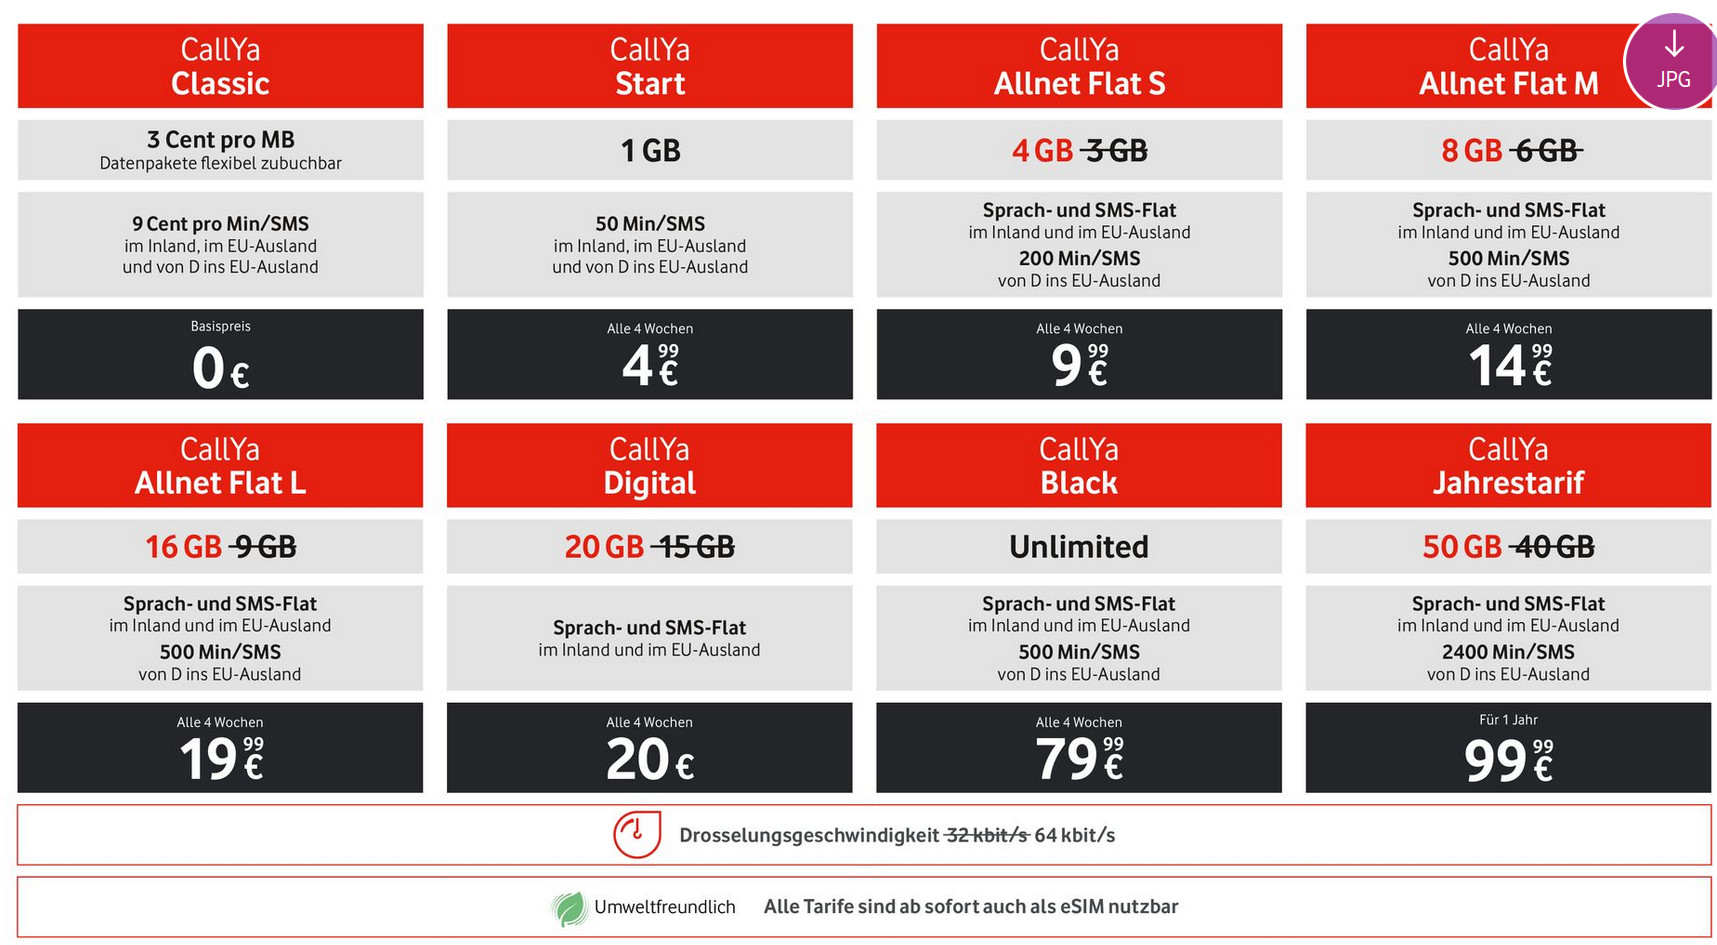 Vodafone CallYa Prepaid: Im Sommer steigt Datenvolumen in den CallYa Tarifen